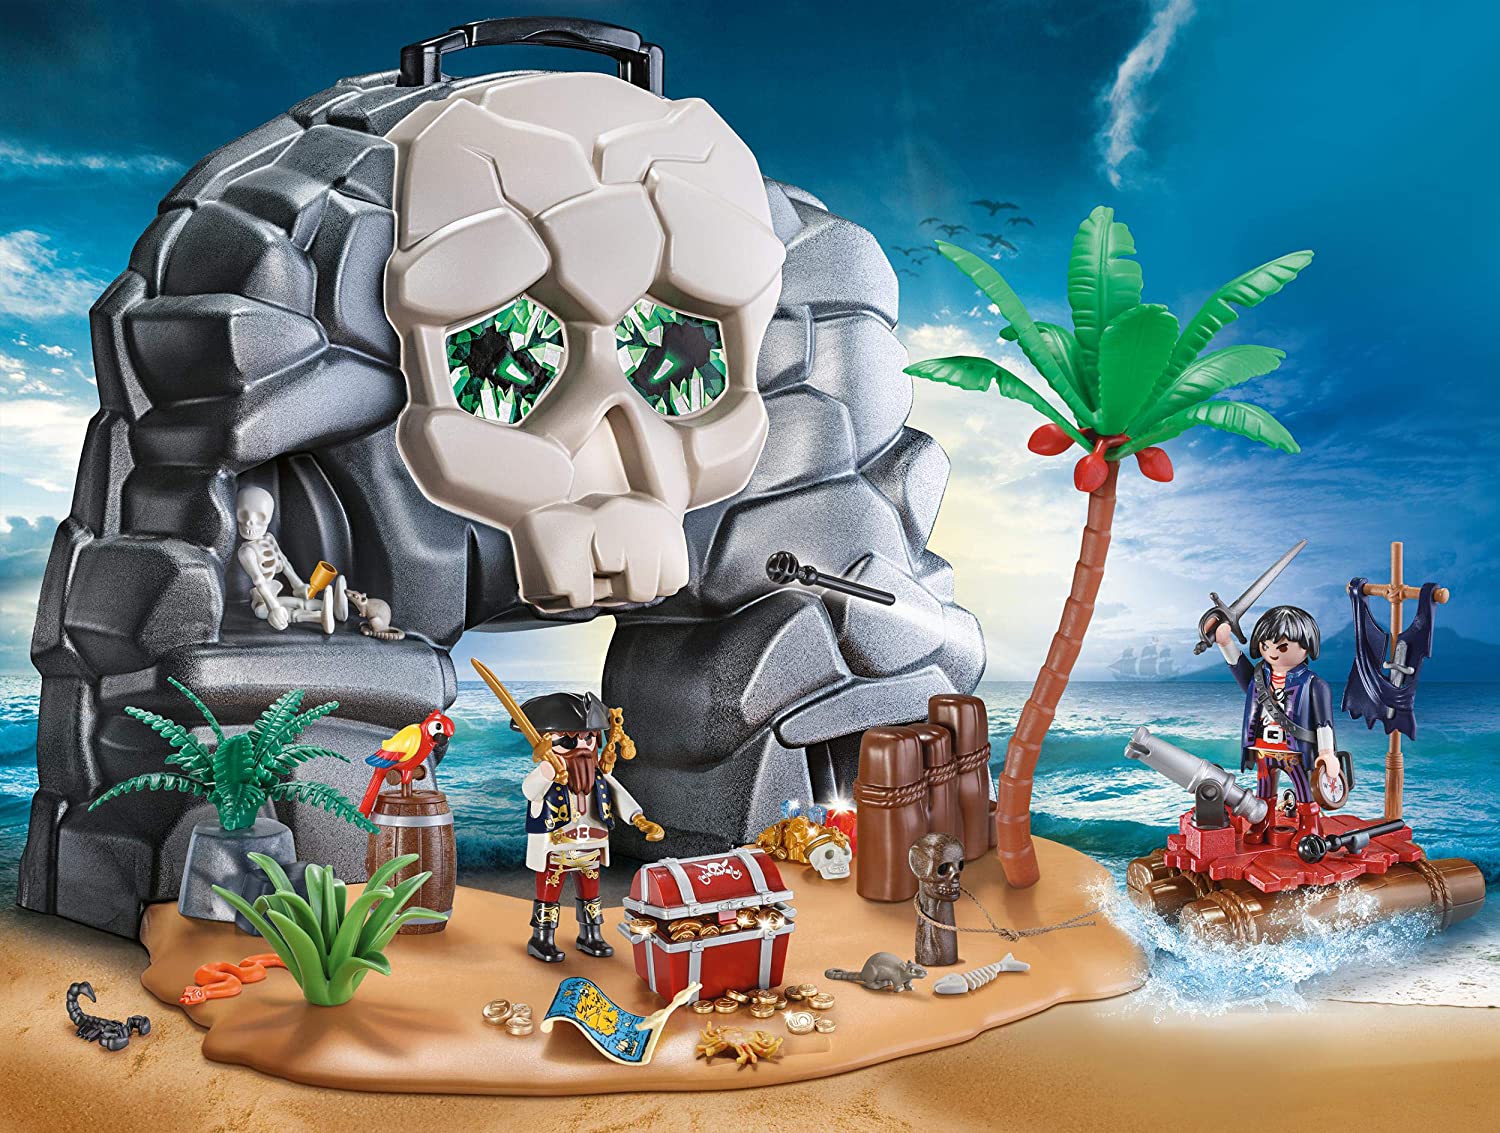 プレイモービル ブロック 組み立て 知育玩具 ドイツ 【送料無料】PLAYMOBIL Take Along Pirate Skull  Islandプレイモービル ブロック 組み立て 知育玩具 ドイツ | angelica